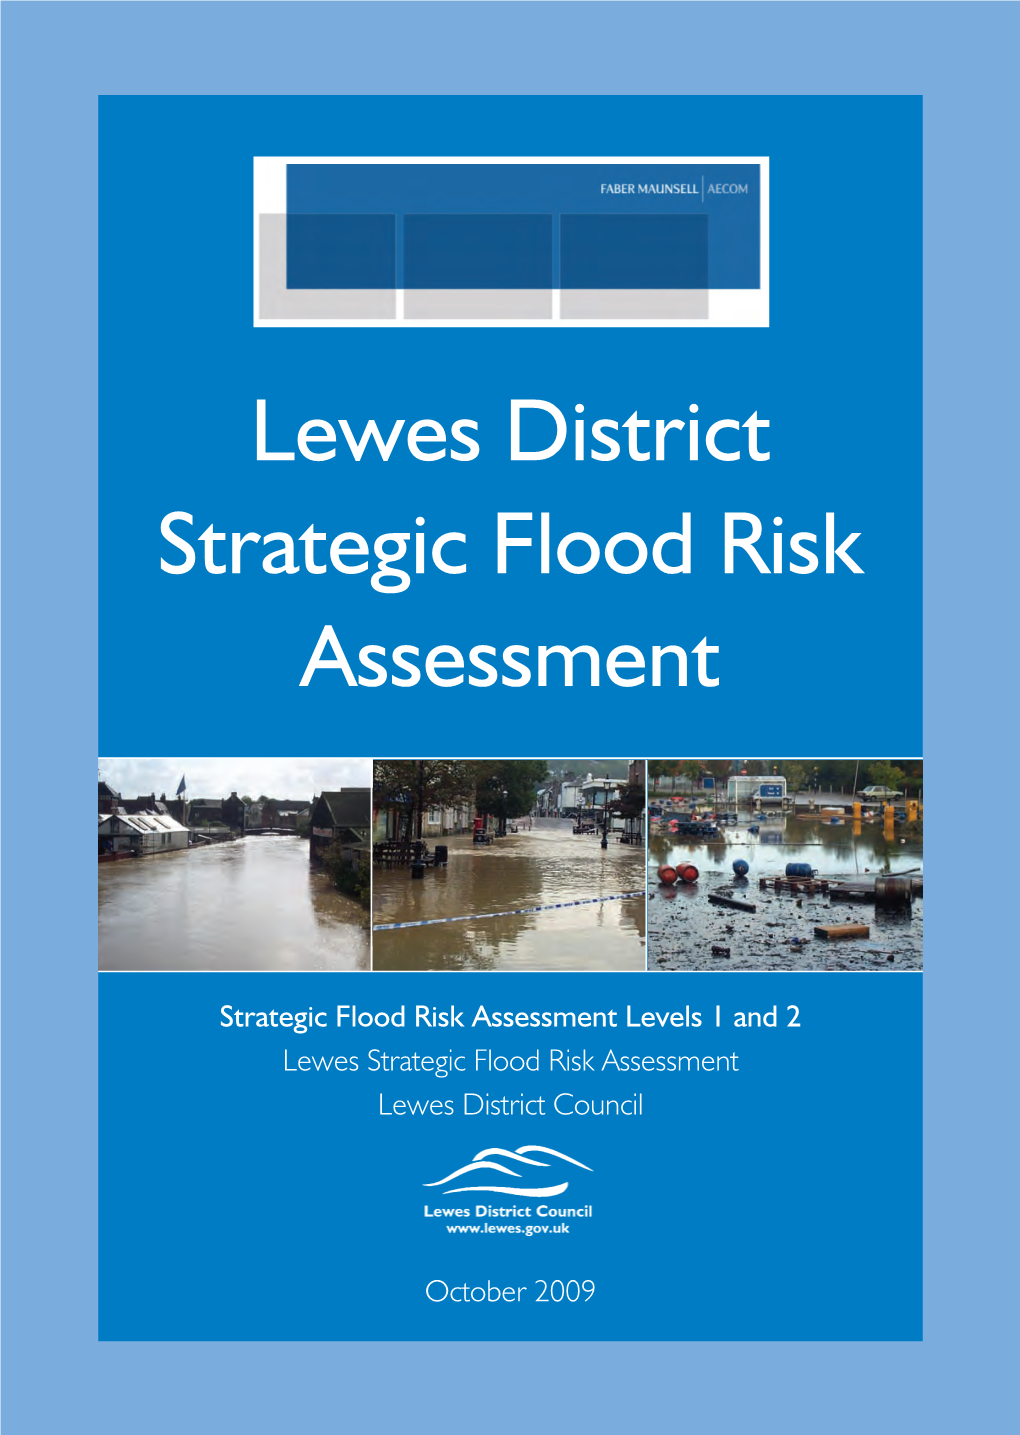 SFRA: Lewes District Strategic Flood Risk Assessment